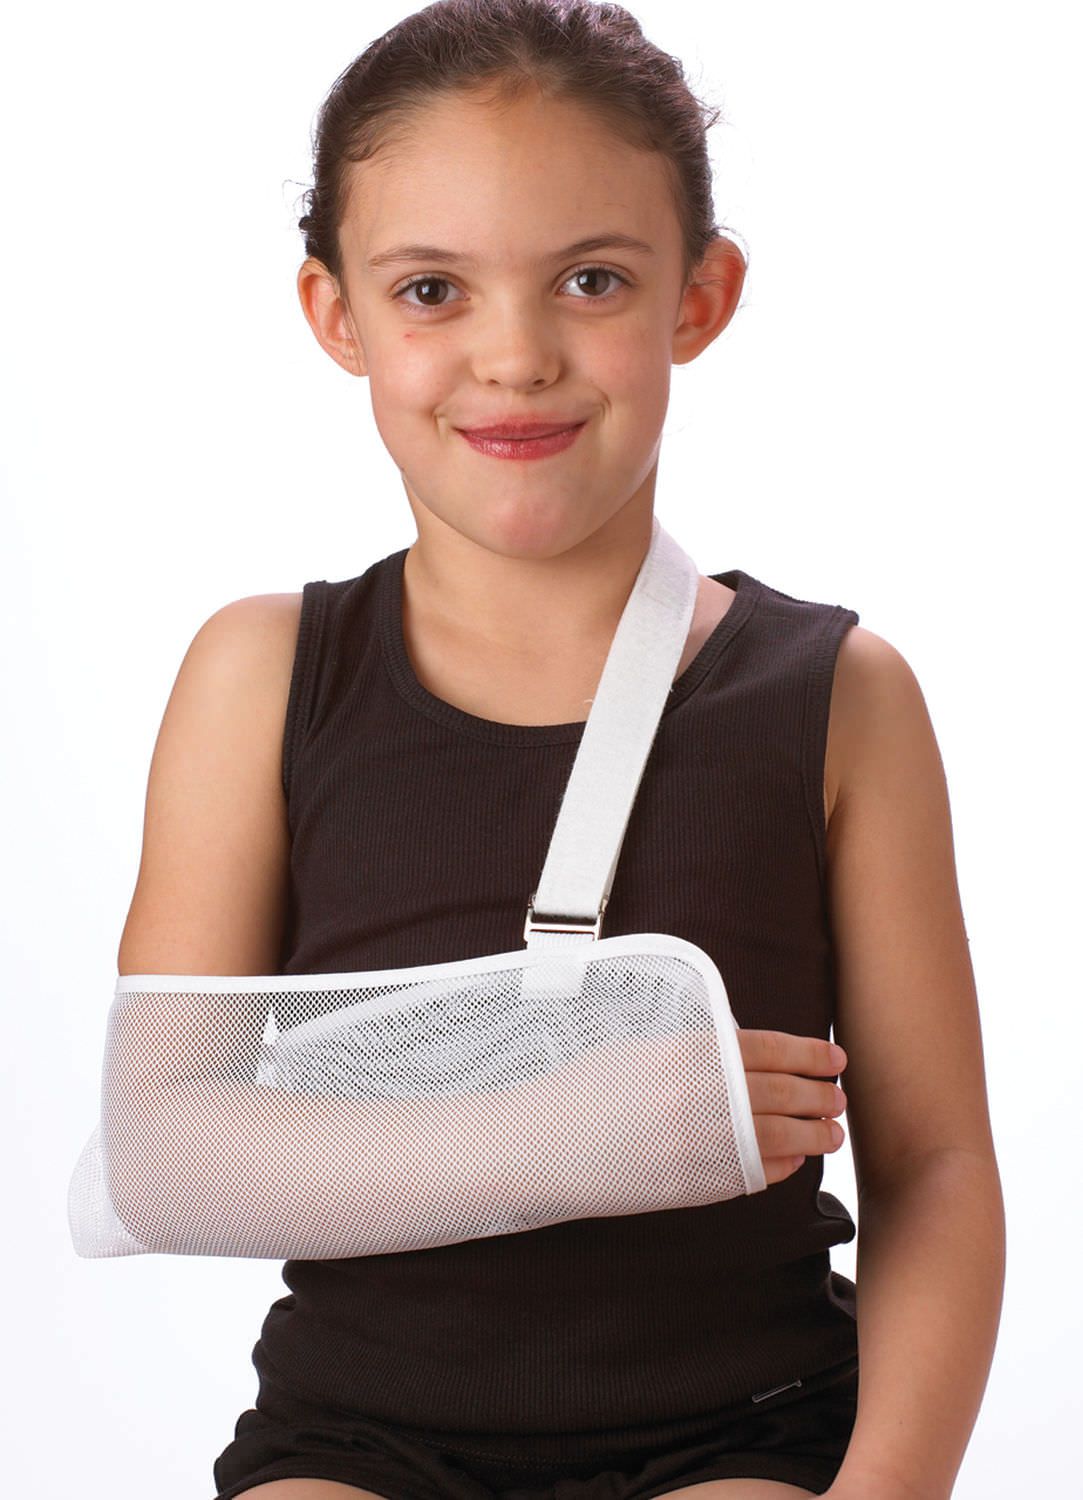 Mesh arm sling / pediatric 21-1730, 21-1731 Corflex